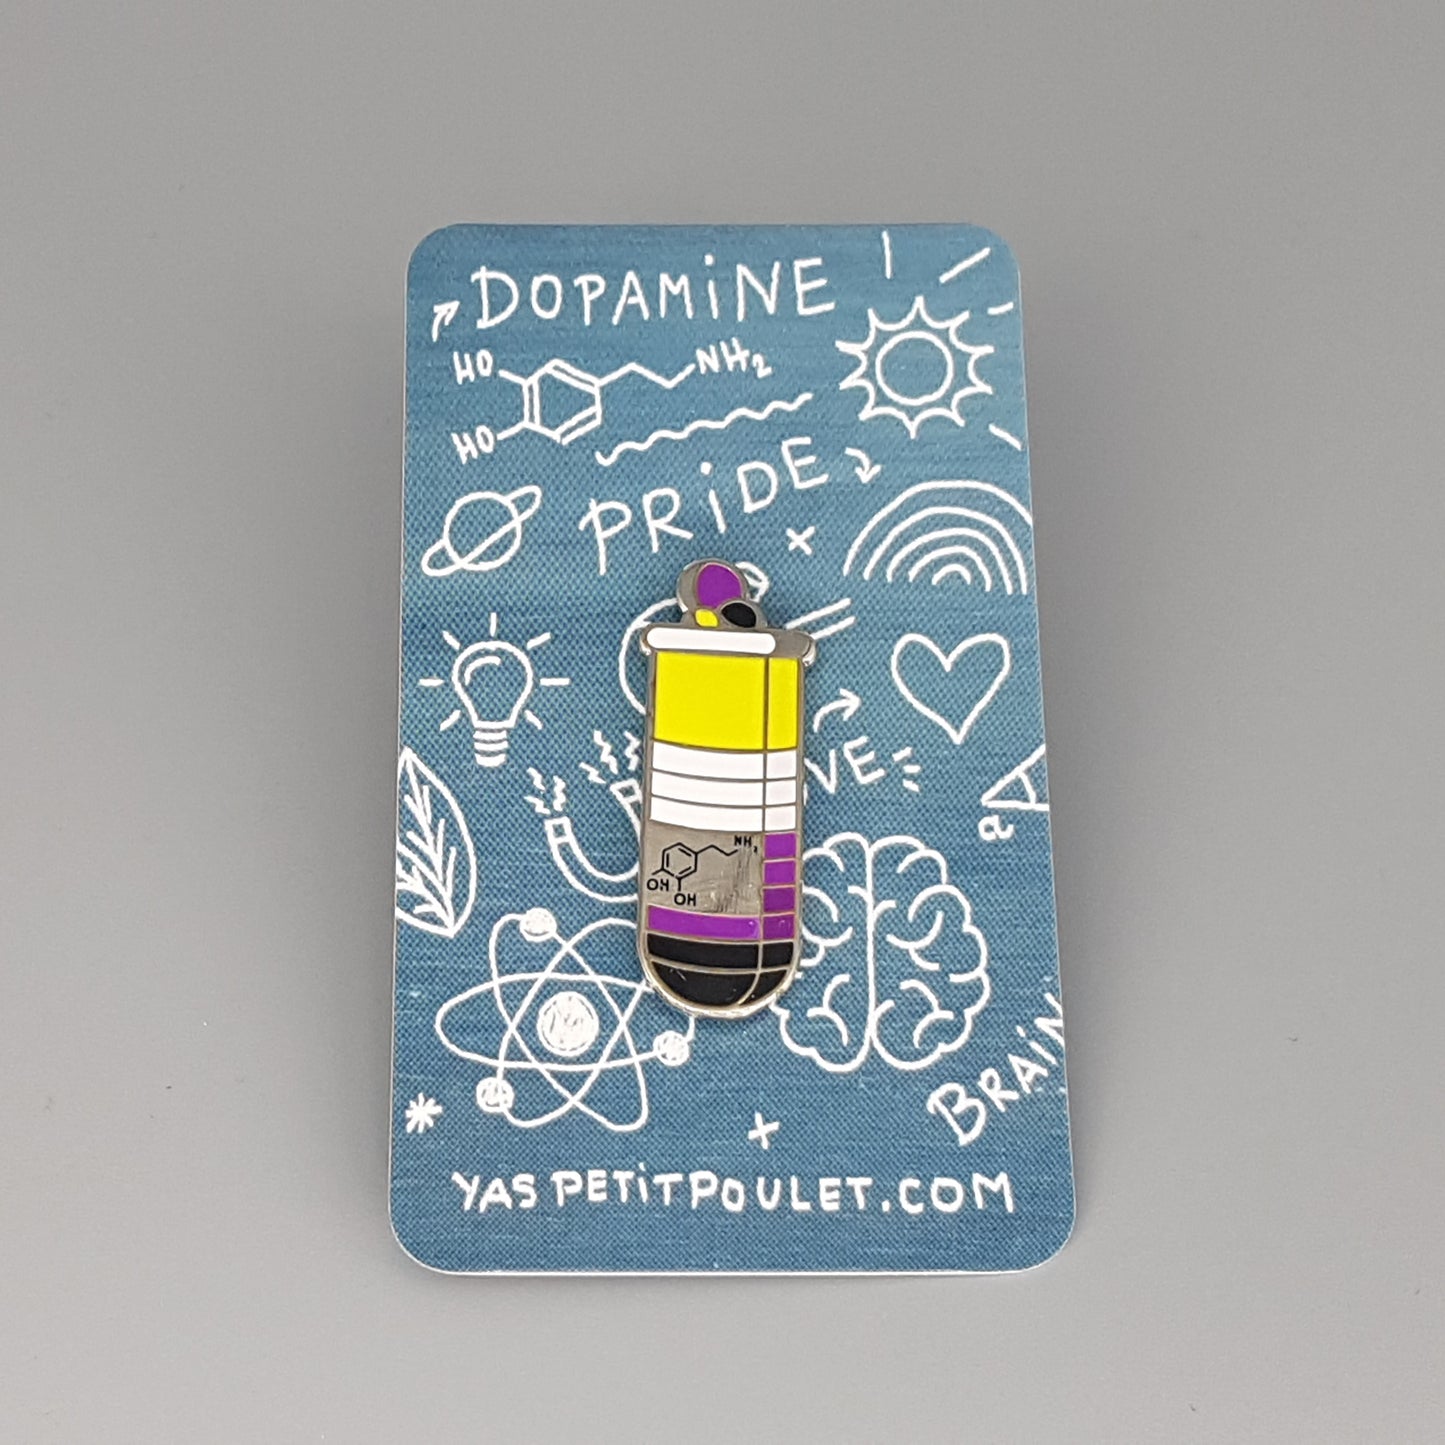 Non-binary Dopamine | Enamel Badge